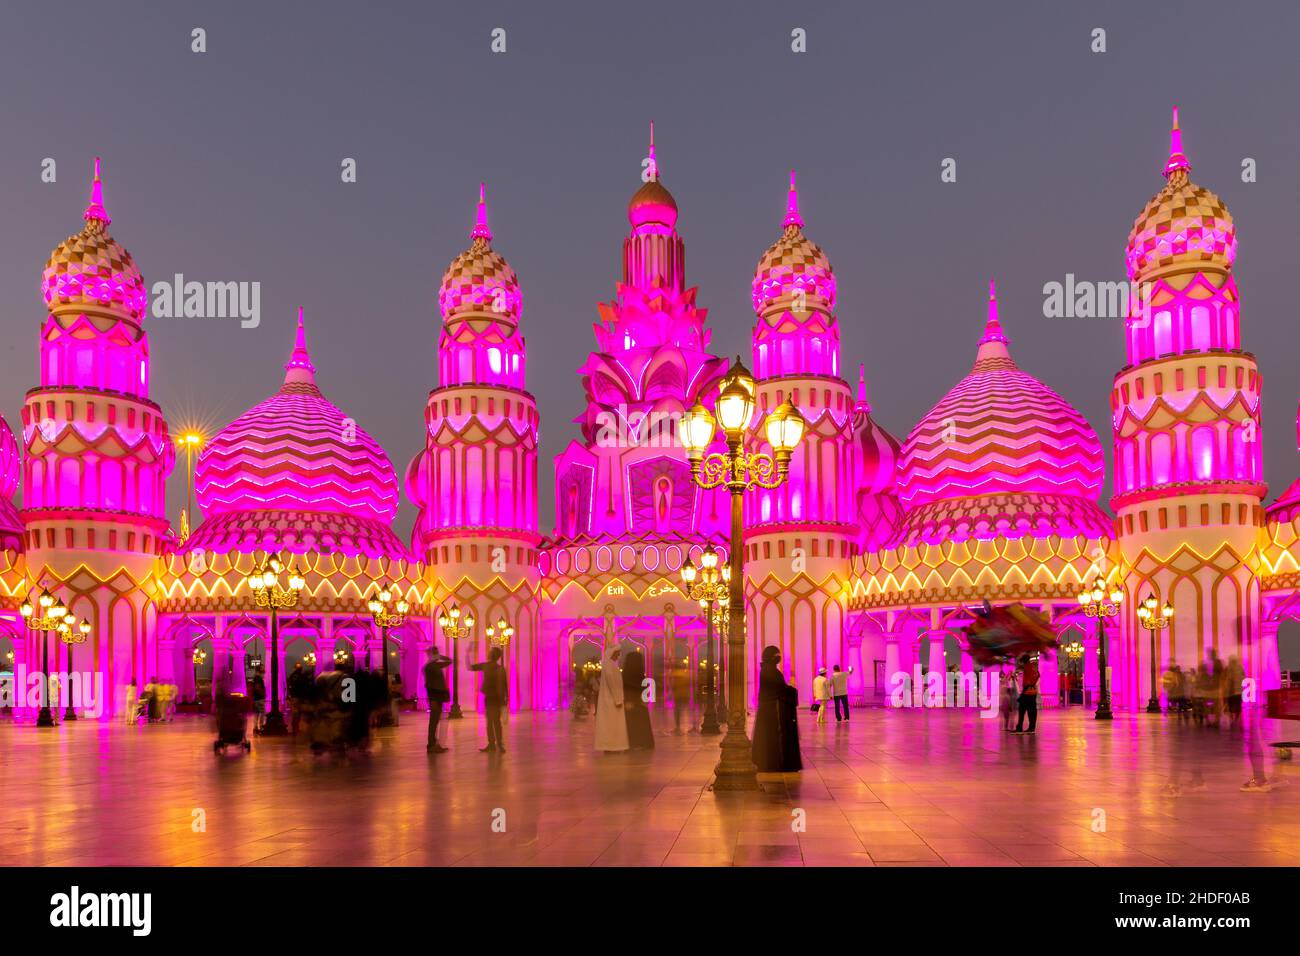 Dubaï, Émirats arabes Unis, 10.01.21.Parc d'attractions Global Village la nuit avec tours et dômes de style arabe illuminés de rose. Banque D'Images